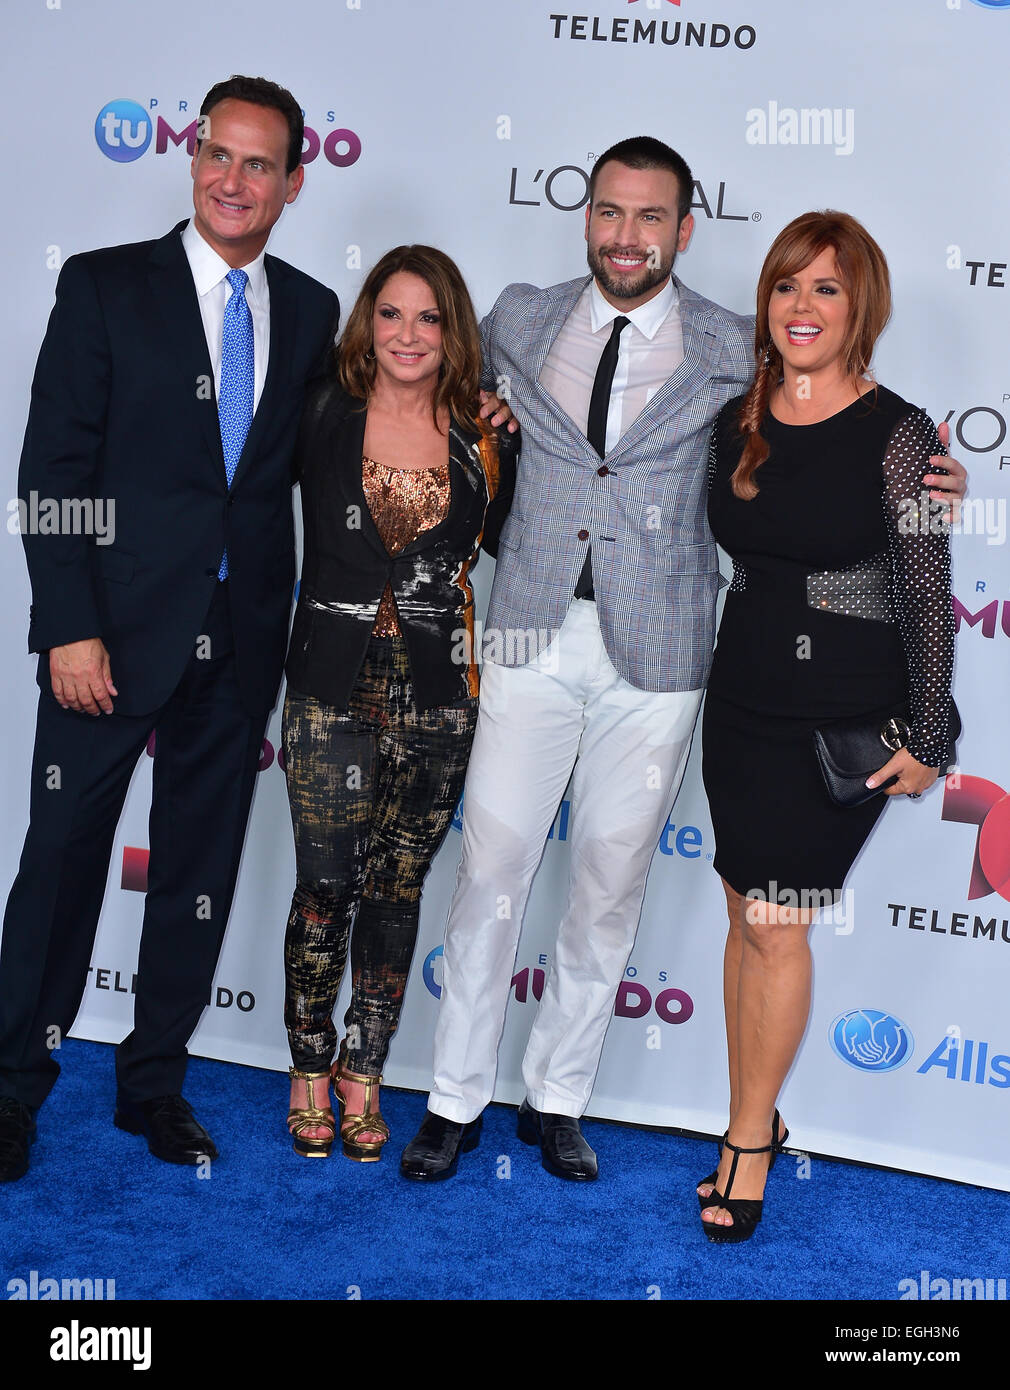 Telemundo Premios Tu Mundo Awards 2014 - Arrivals Featuring: Jose Dias- Balart,Ana Maria Polo,Rafael Amaya,Celeste Arraras Where: Miami, Florida, United States When: 22 Aug 2014 Stock Photo